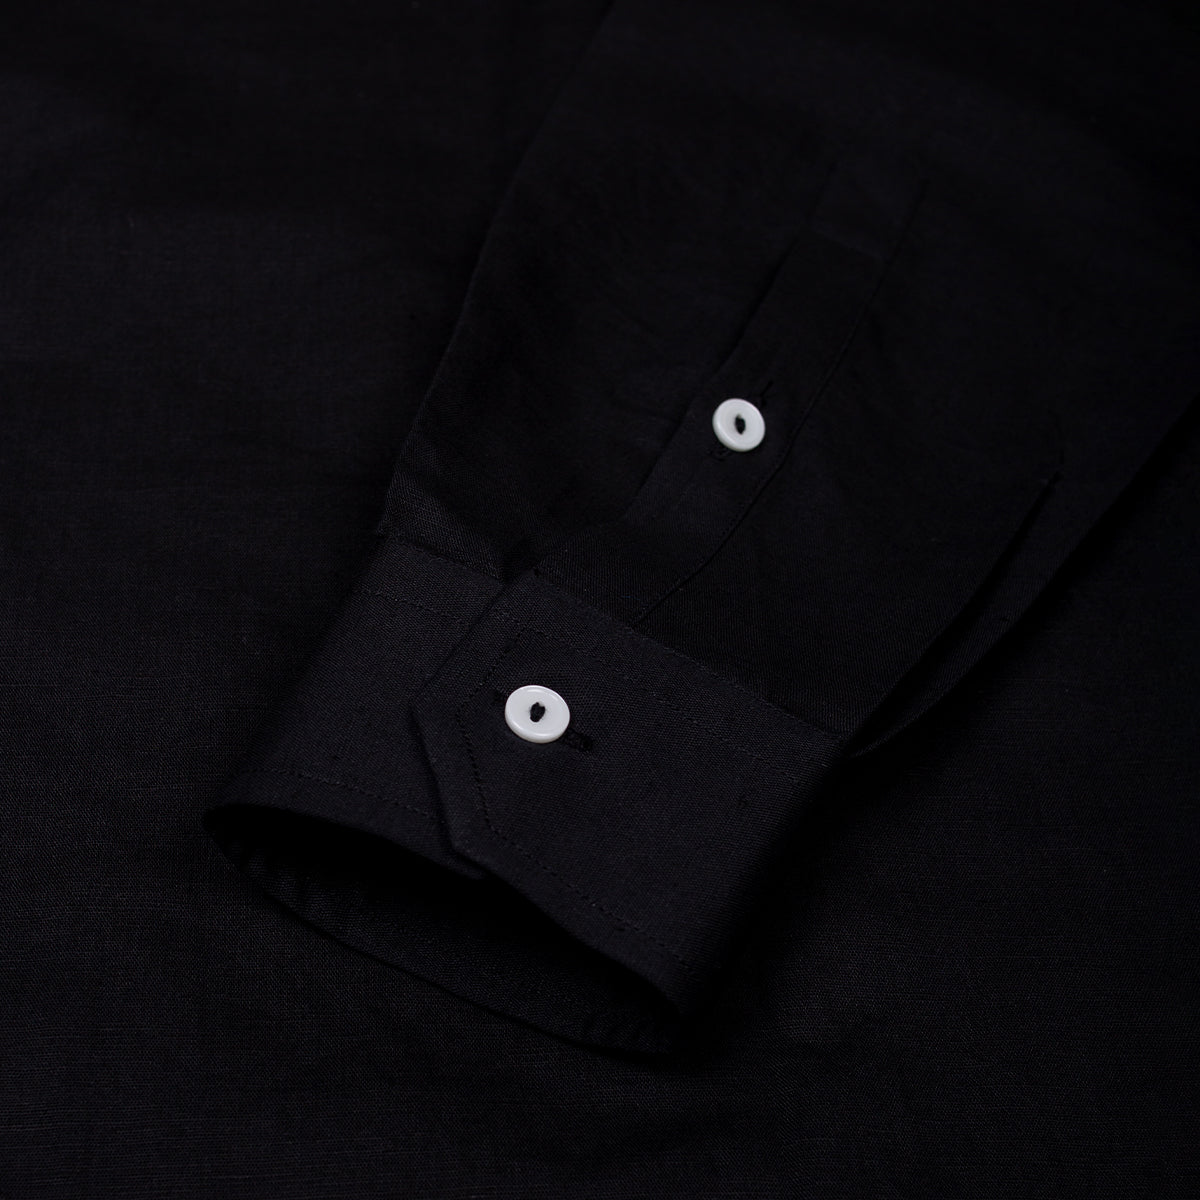 Basic Black Linen Shirt - Her's